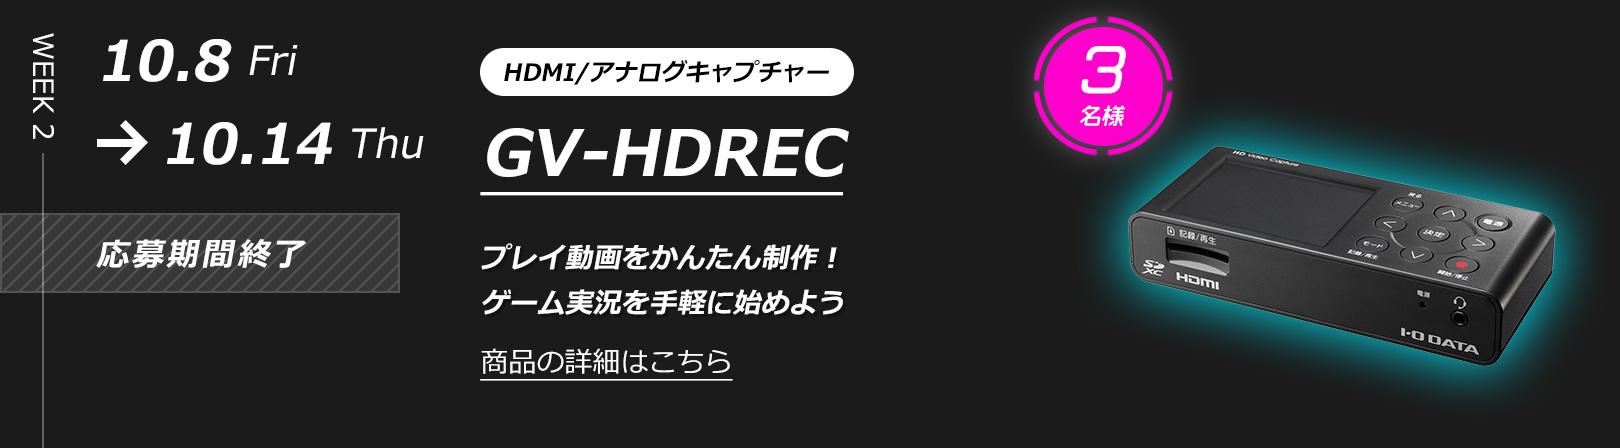 WEEK 2: HDMI/アナログキャプチャー GV-HDREC